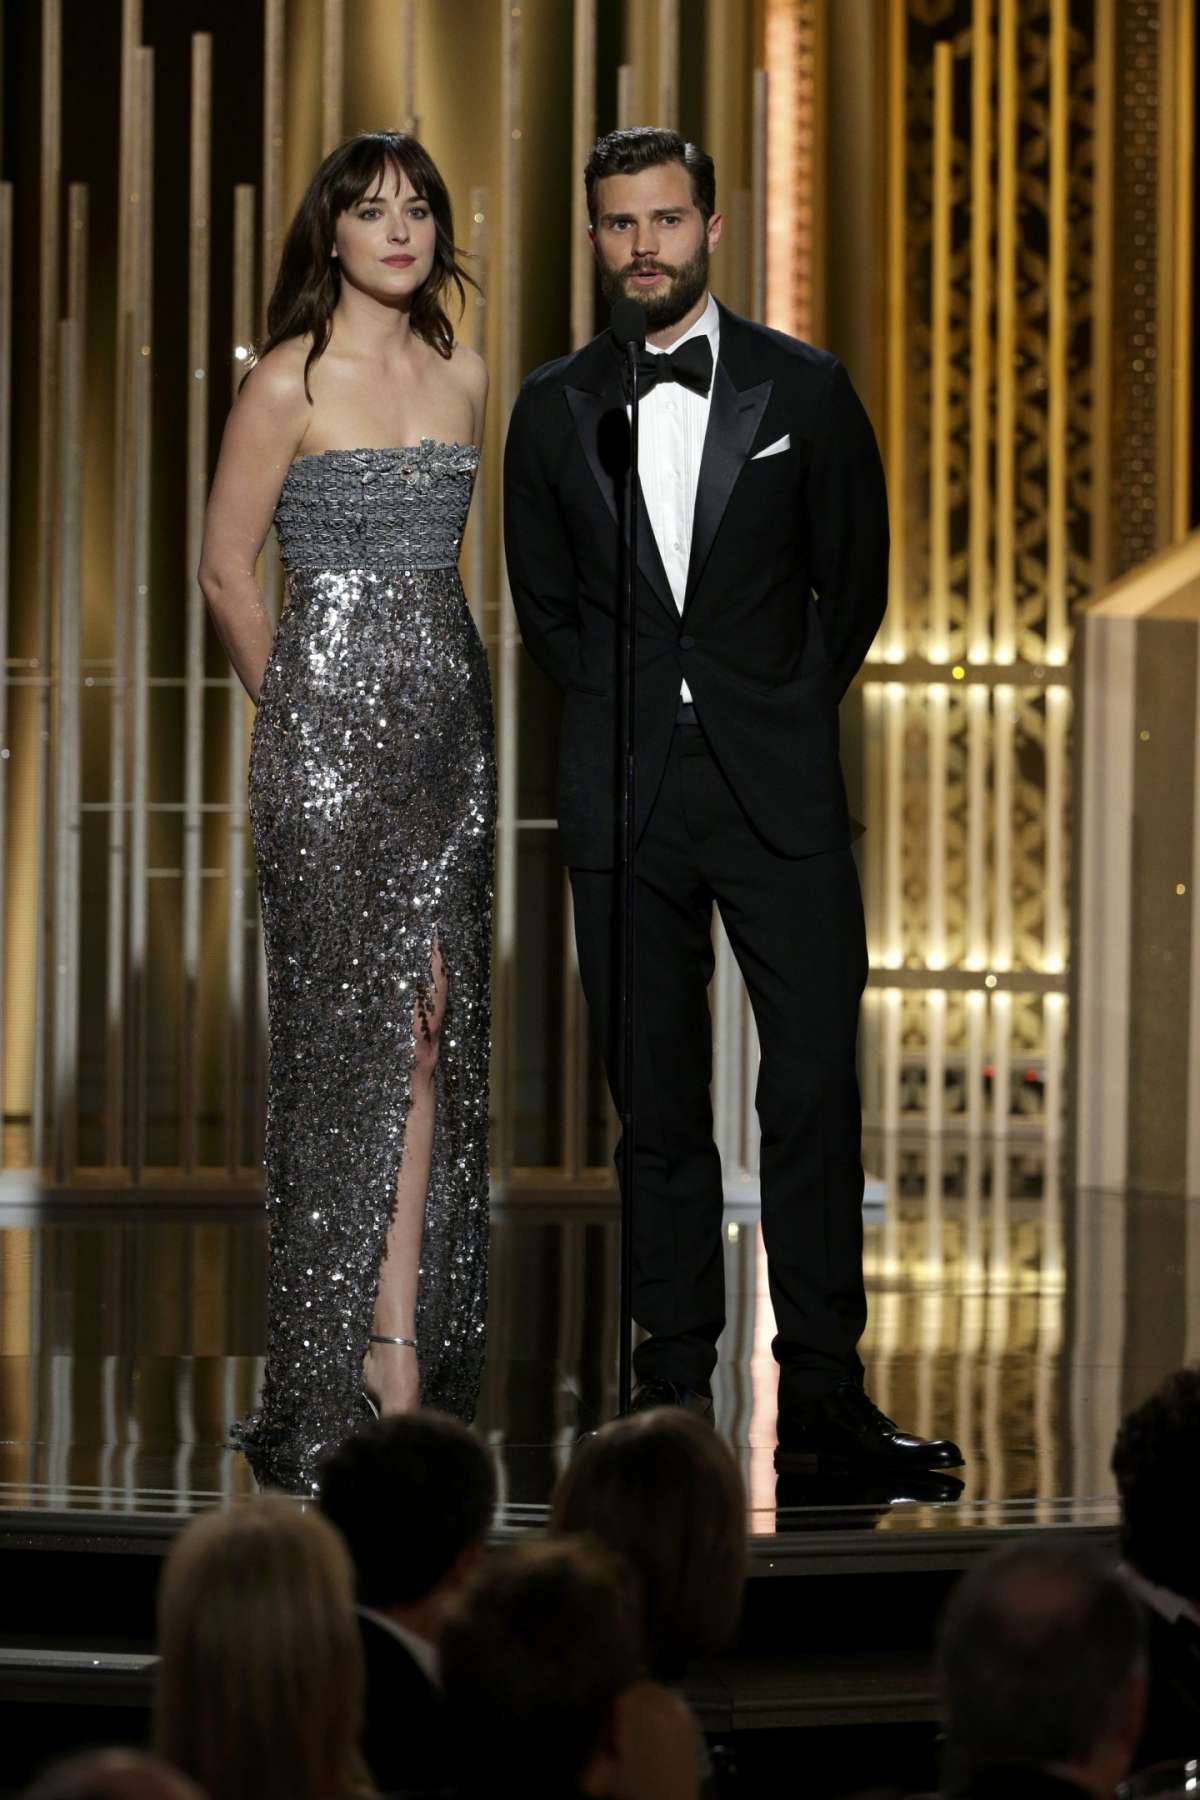 I due attori sul palco dei Golden Globe Awards 2015